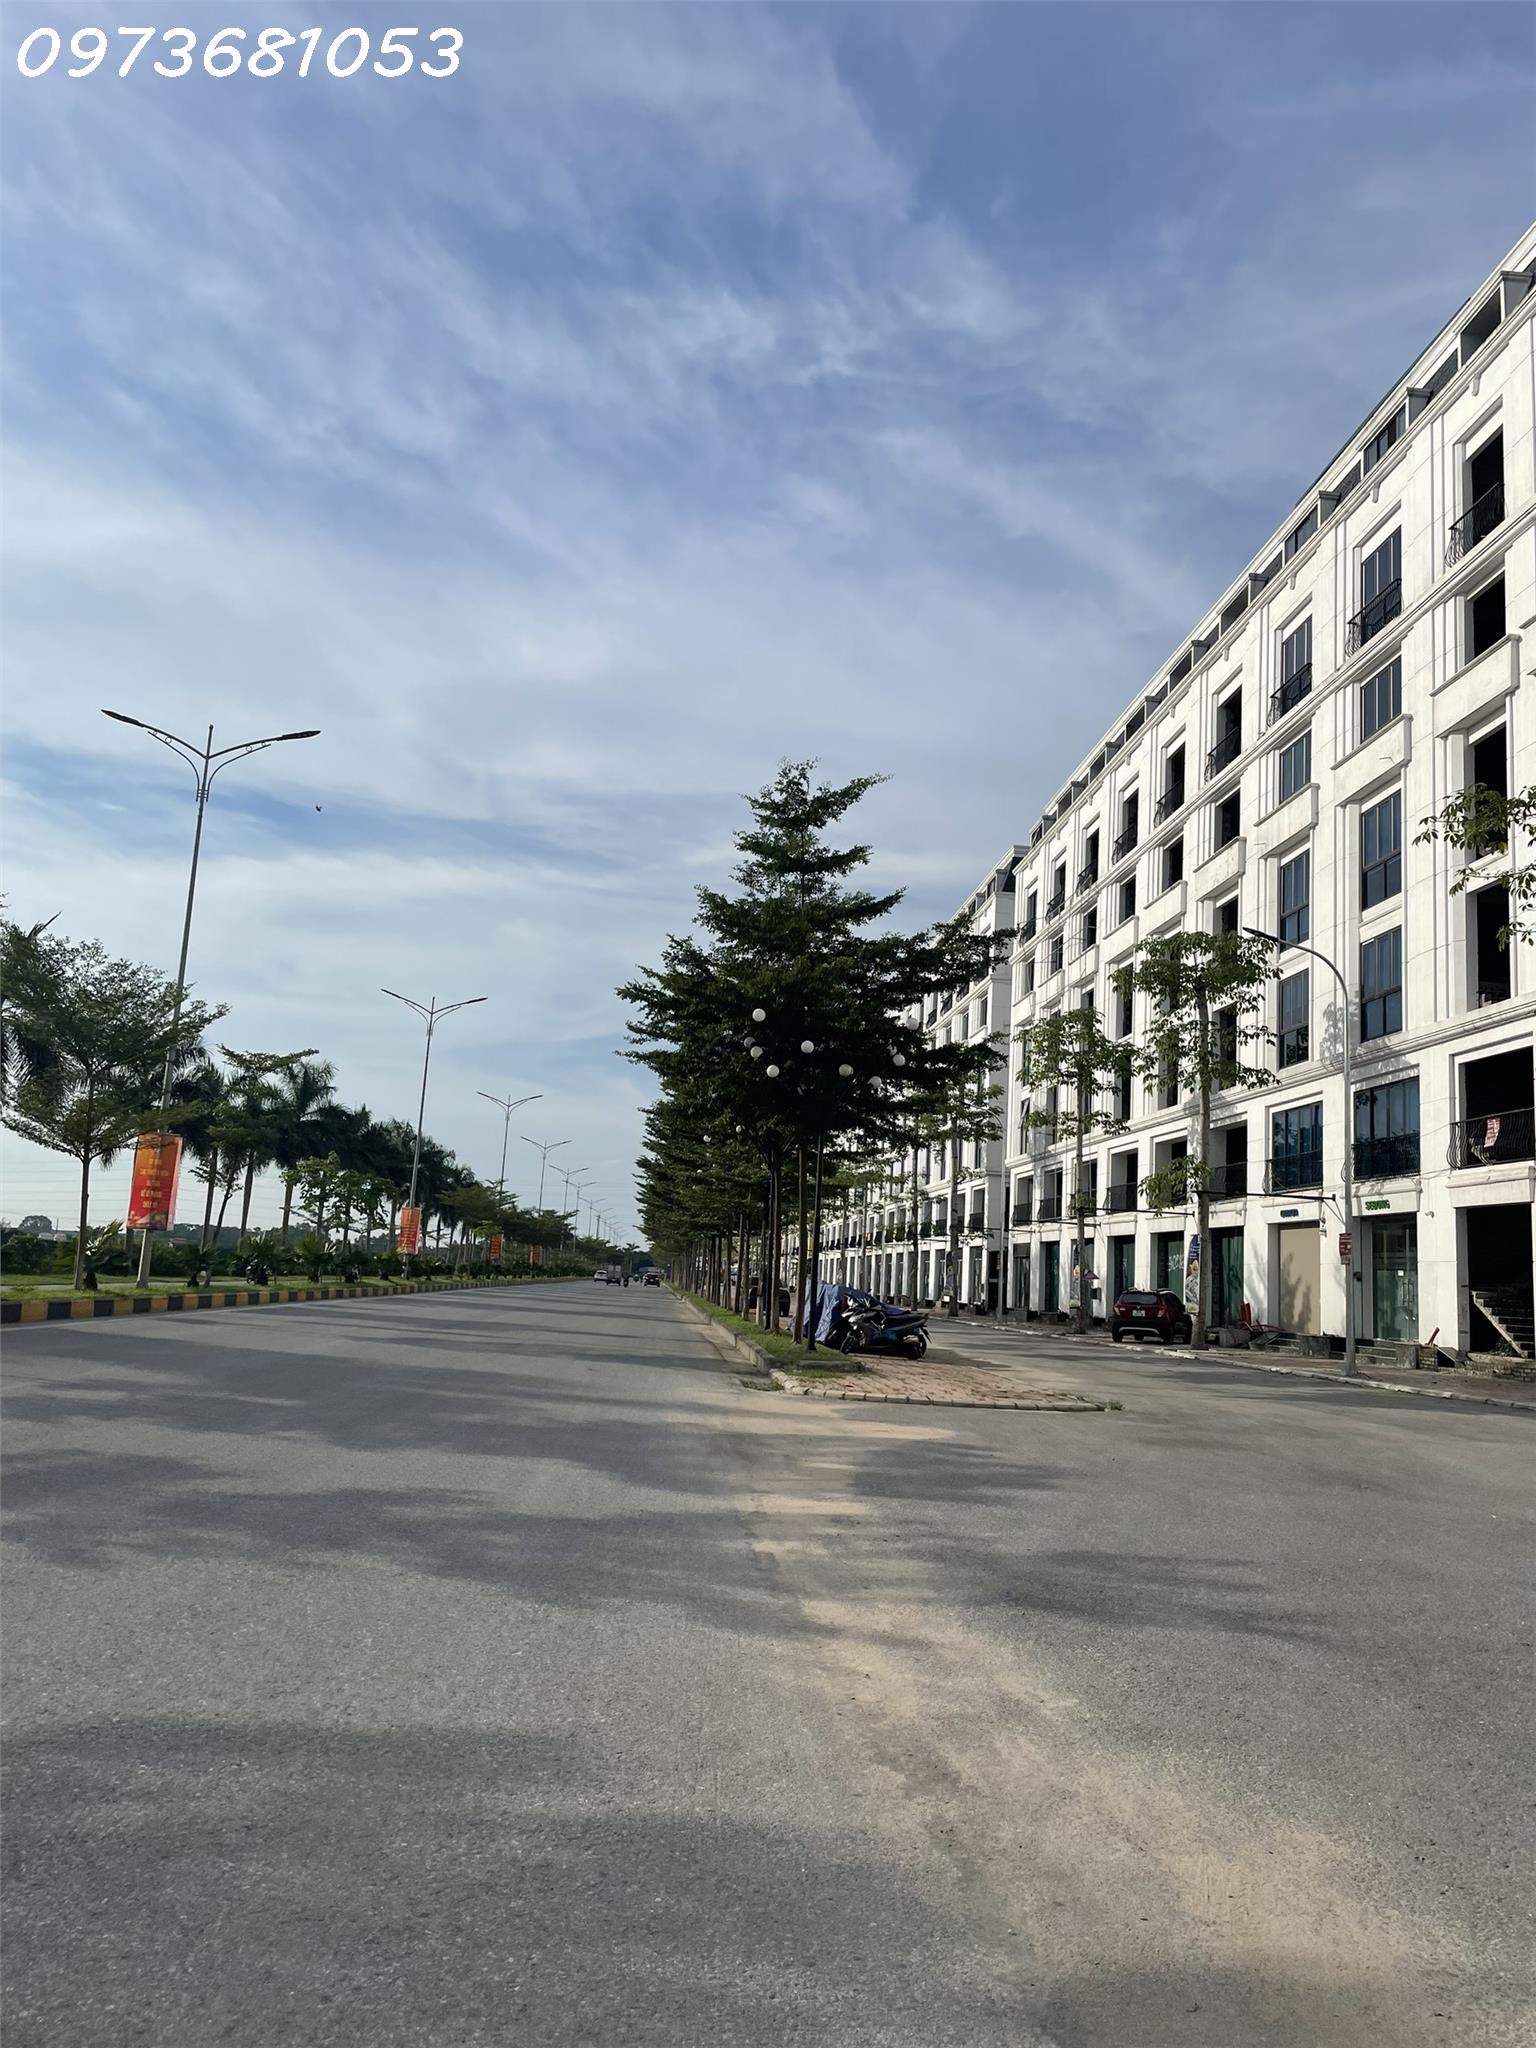 ⚜️Cát Tường Smart City Yên Phong, Khơi Nguồn Thịnh Vượng- Thắp Sáng An Cư - Ảnh chính